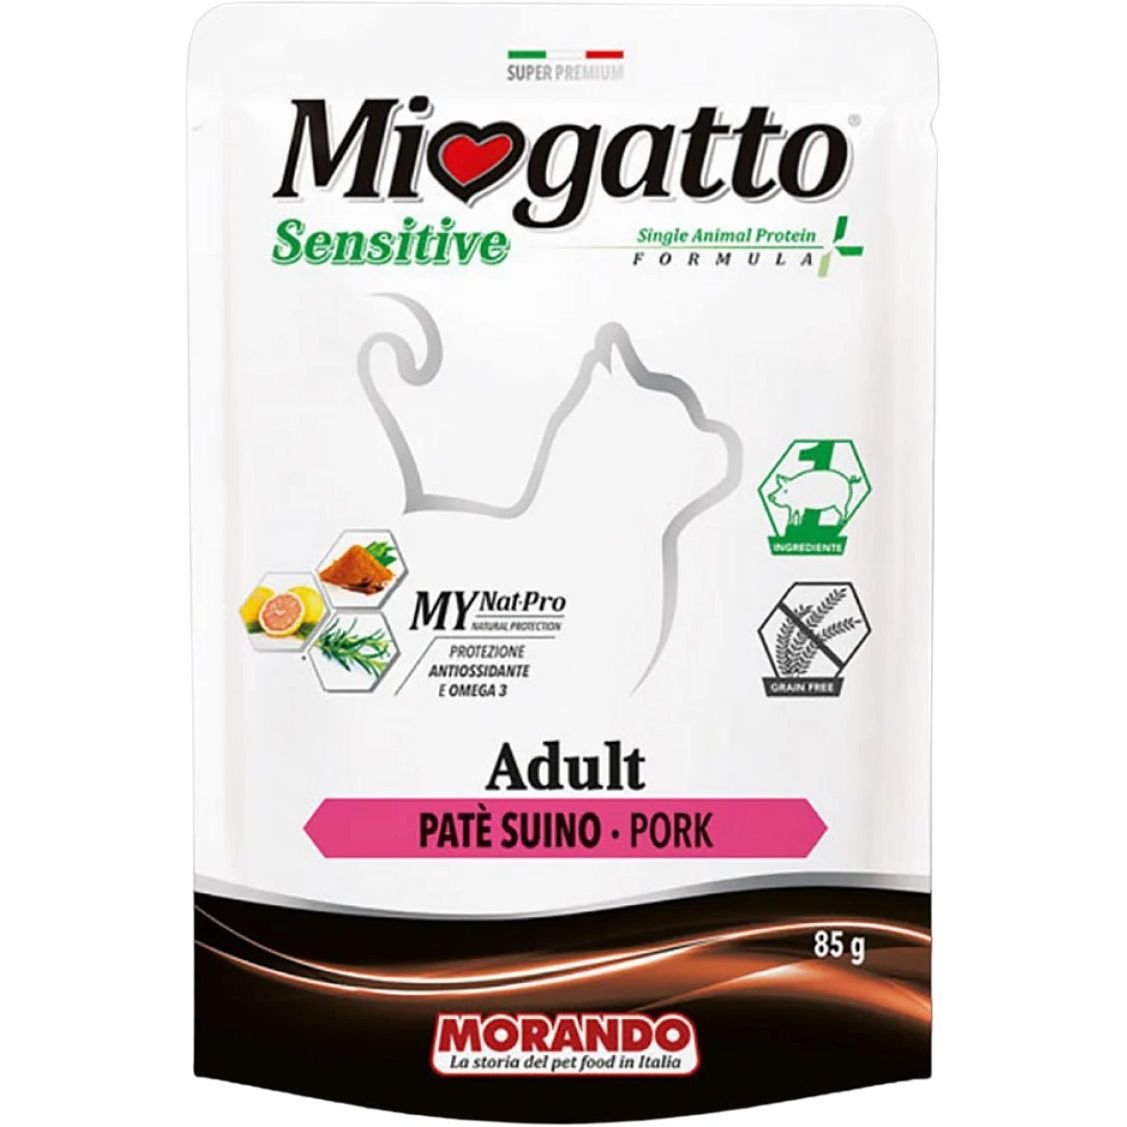 Монопротеиновый беззерновой влажный корм для кошек Morando MioGatto Sensitive Monoprotein, прошутто, 85 г - фото 1